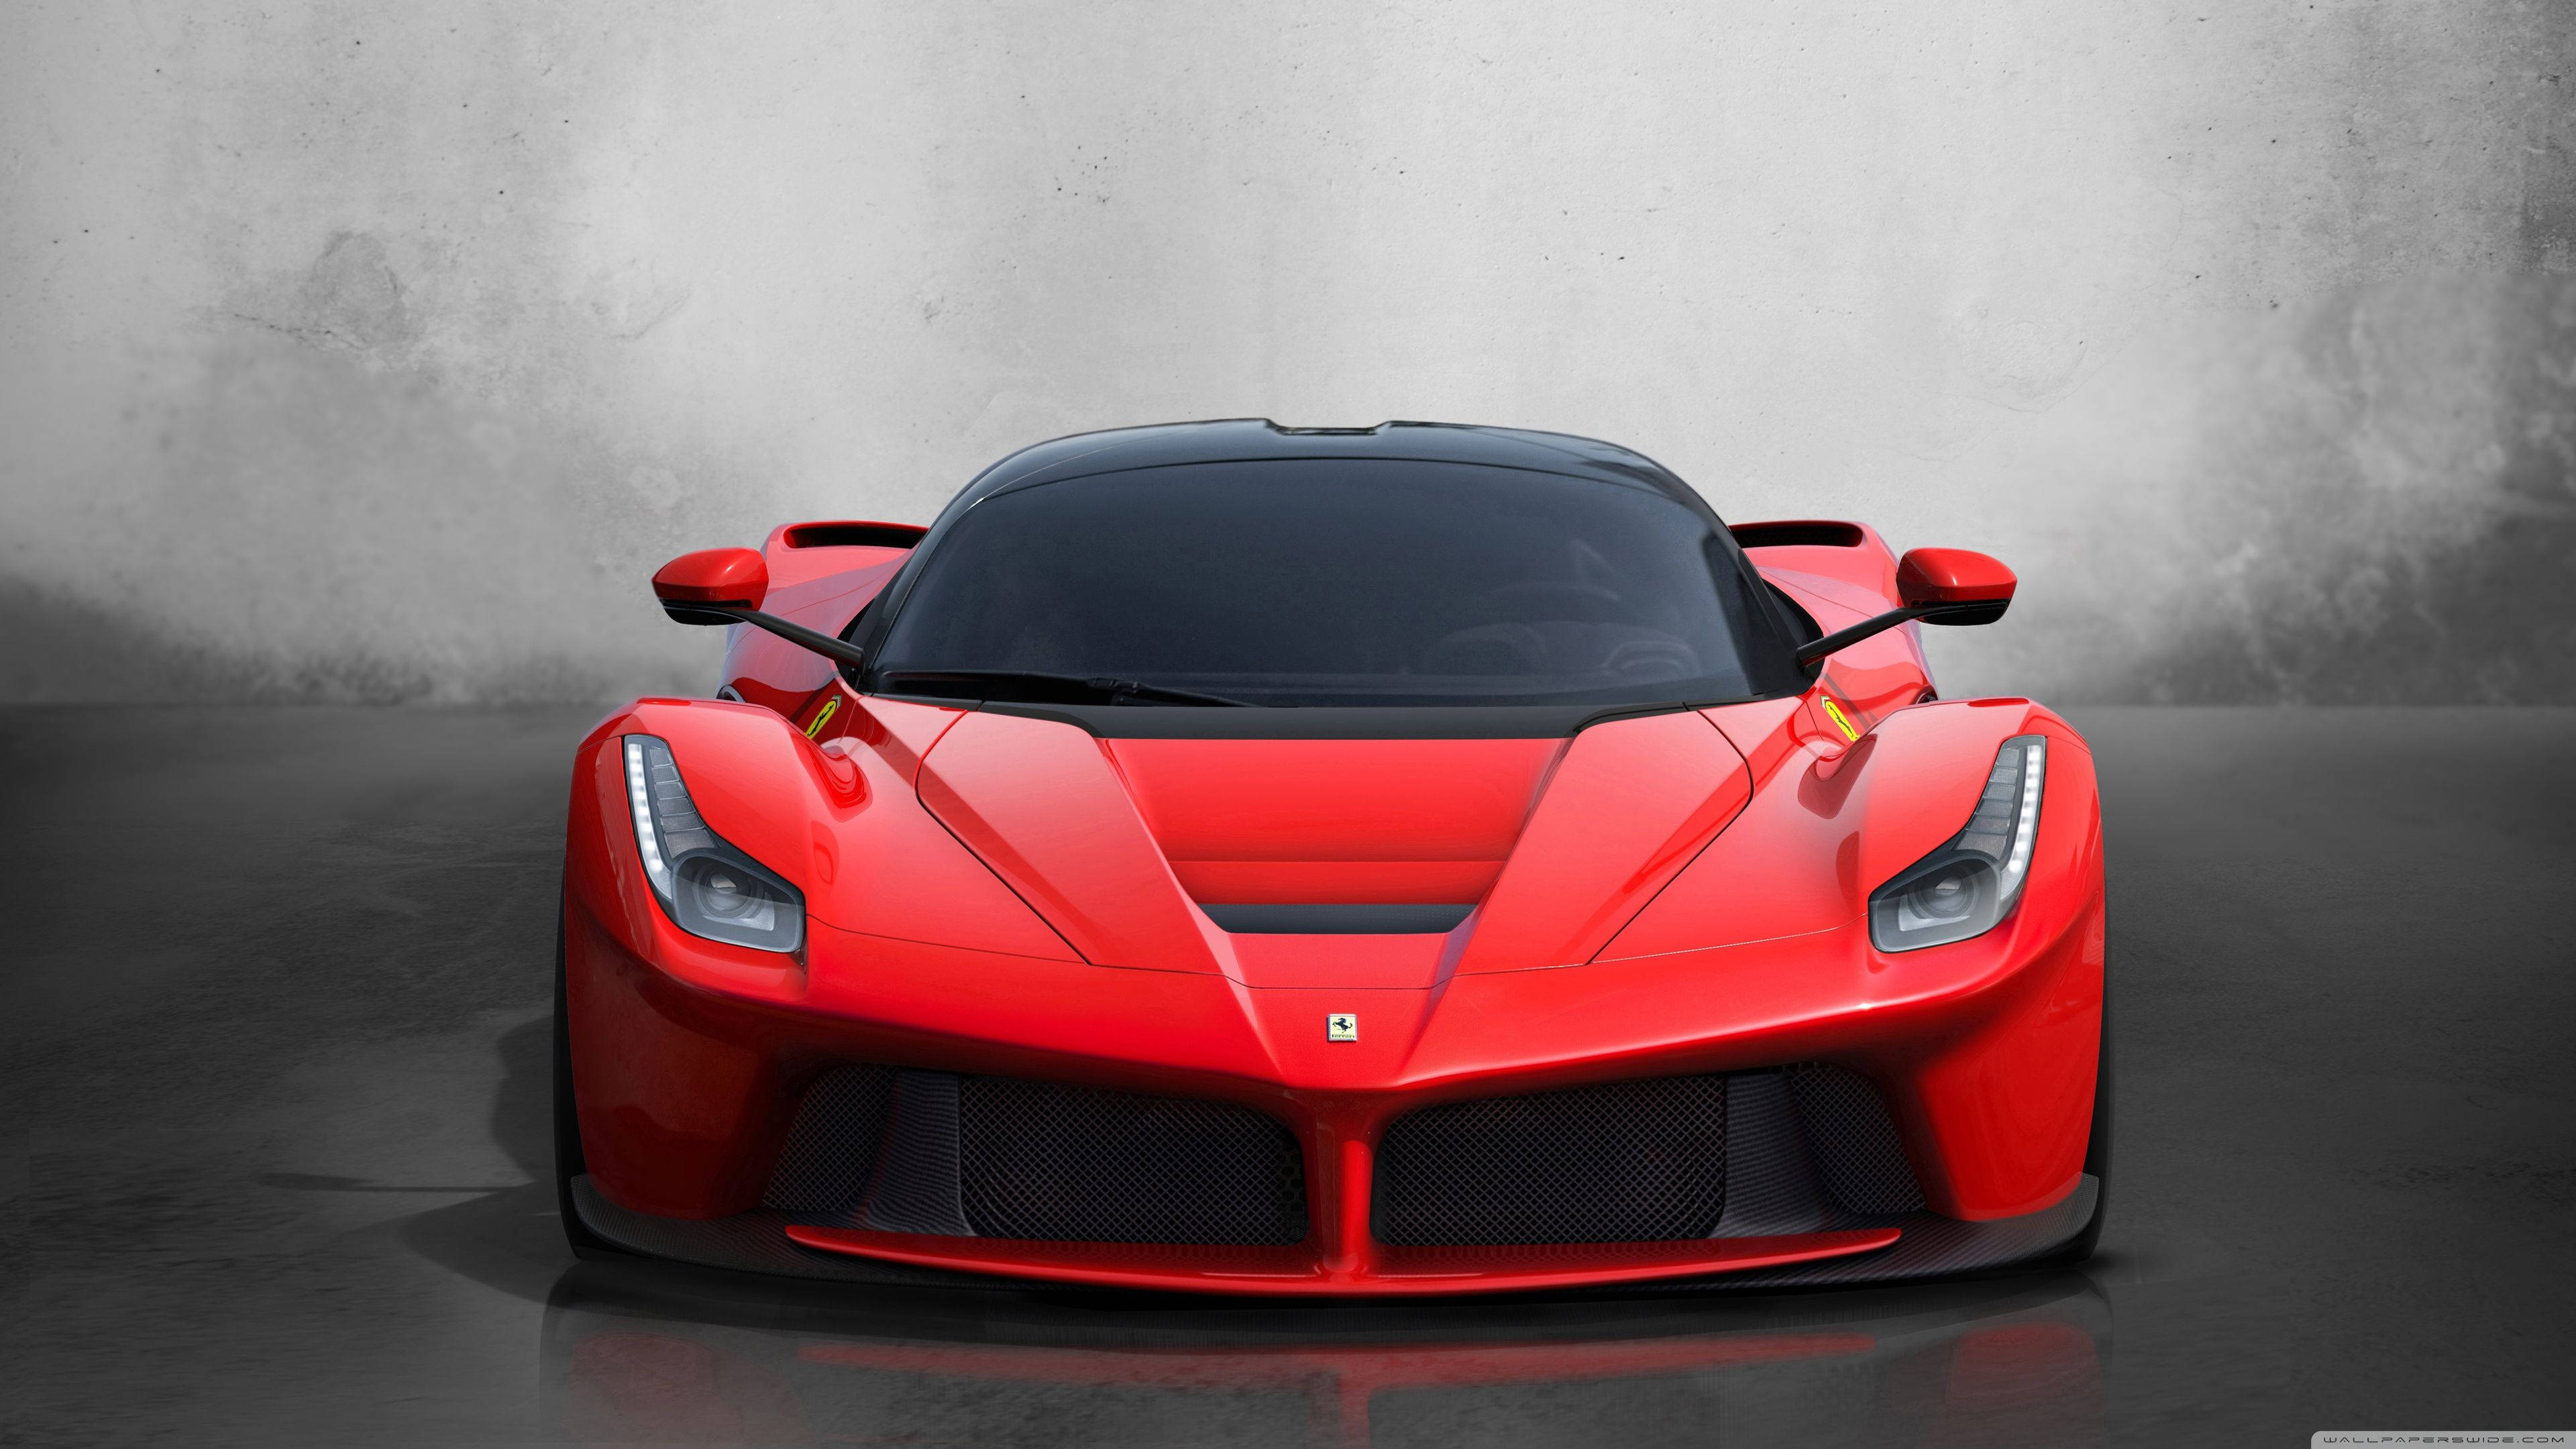 Ferrari Laferrari 2013 Background